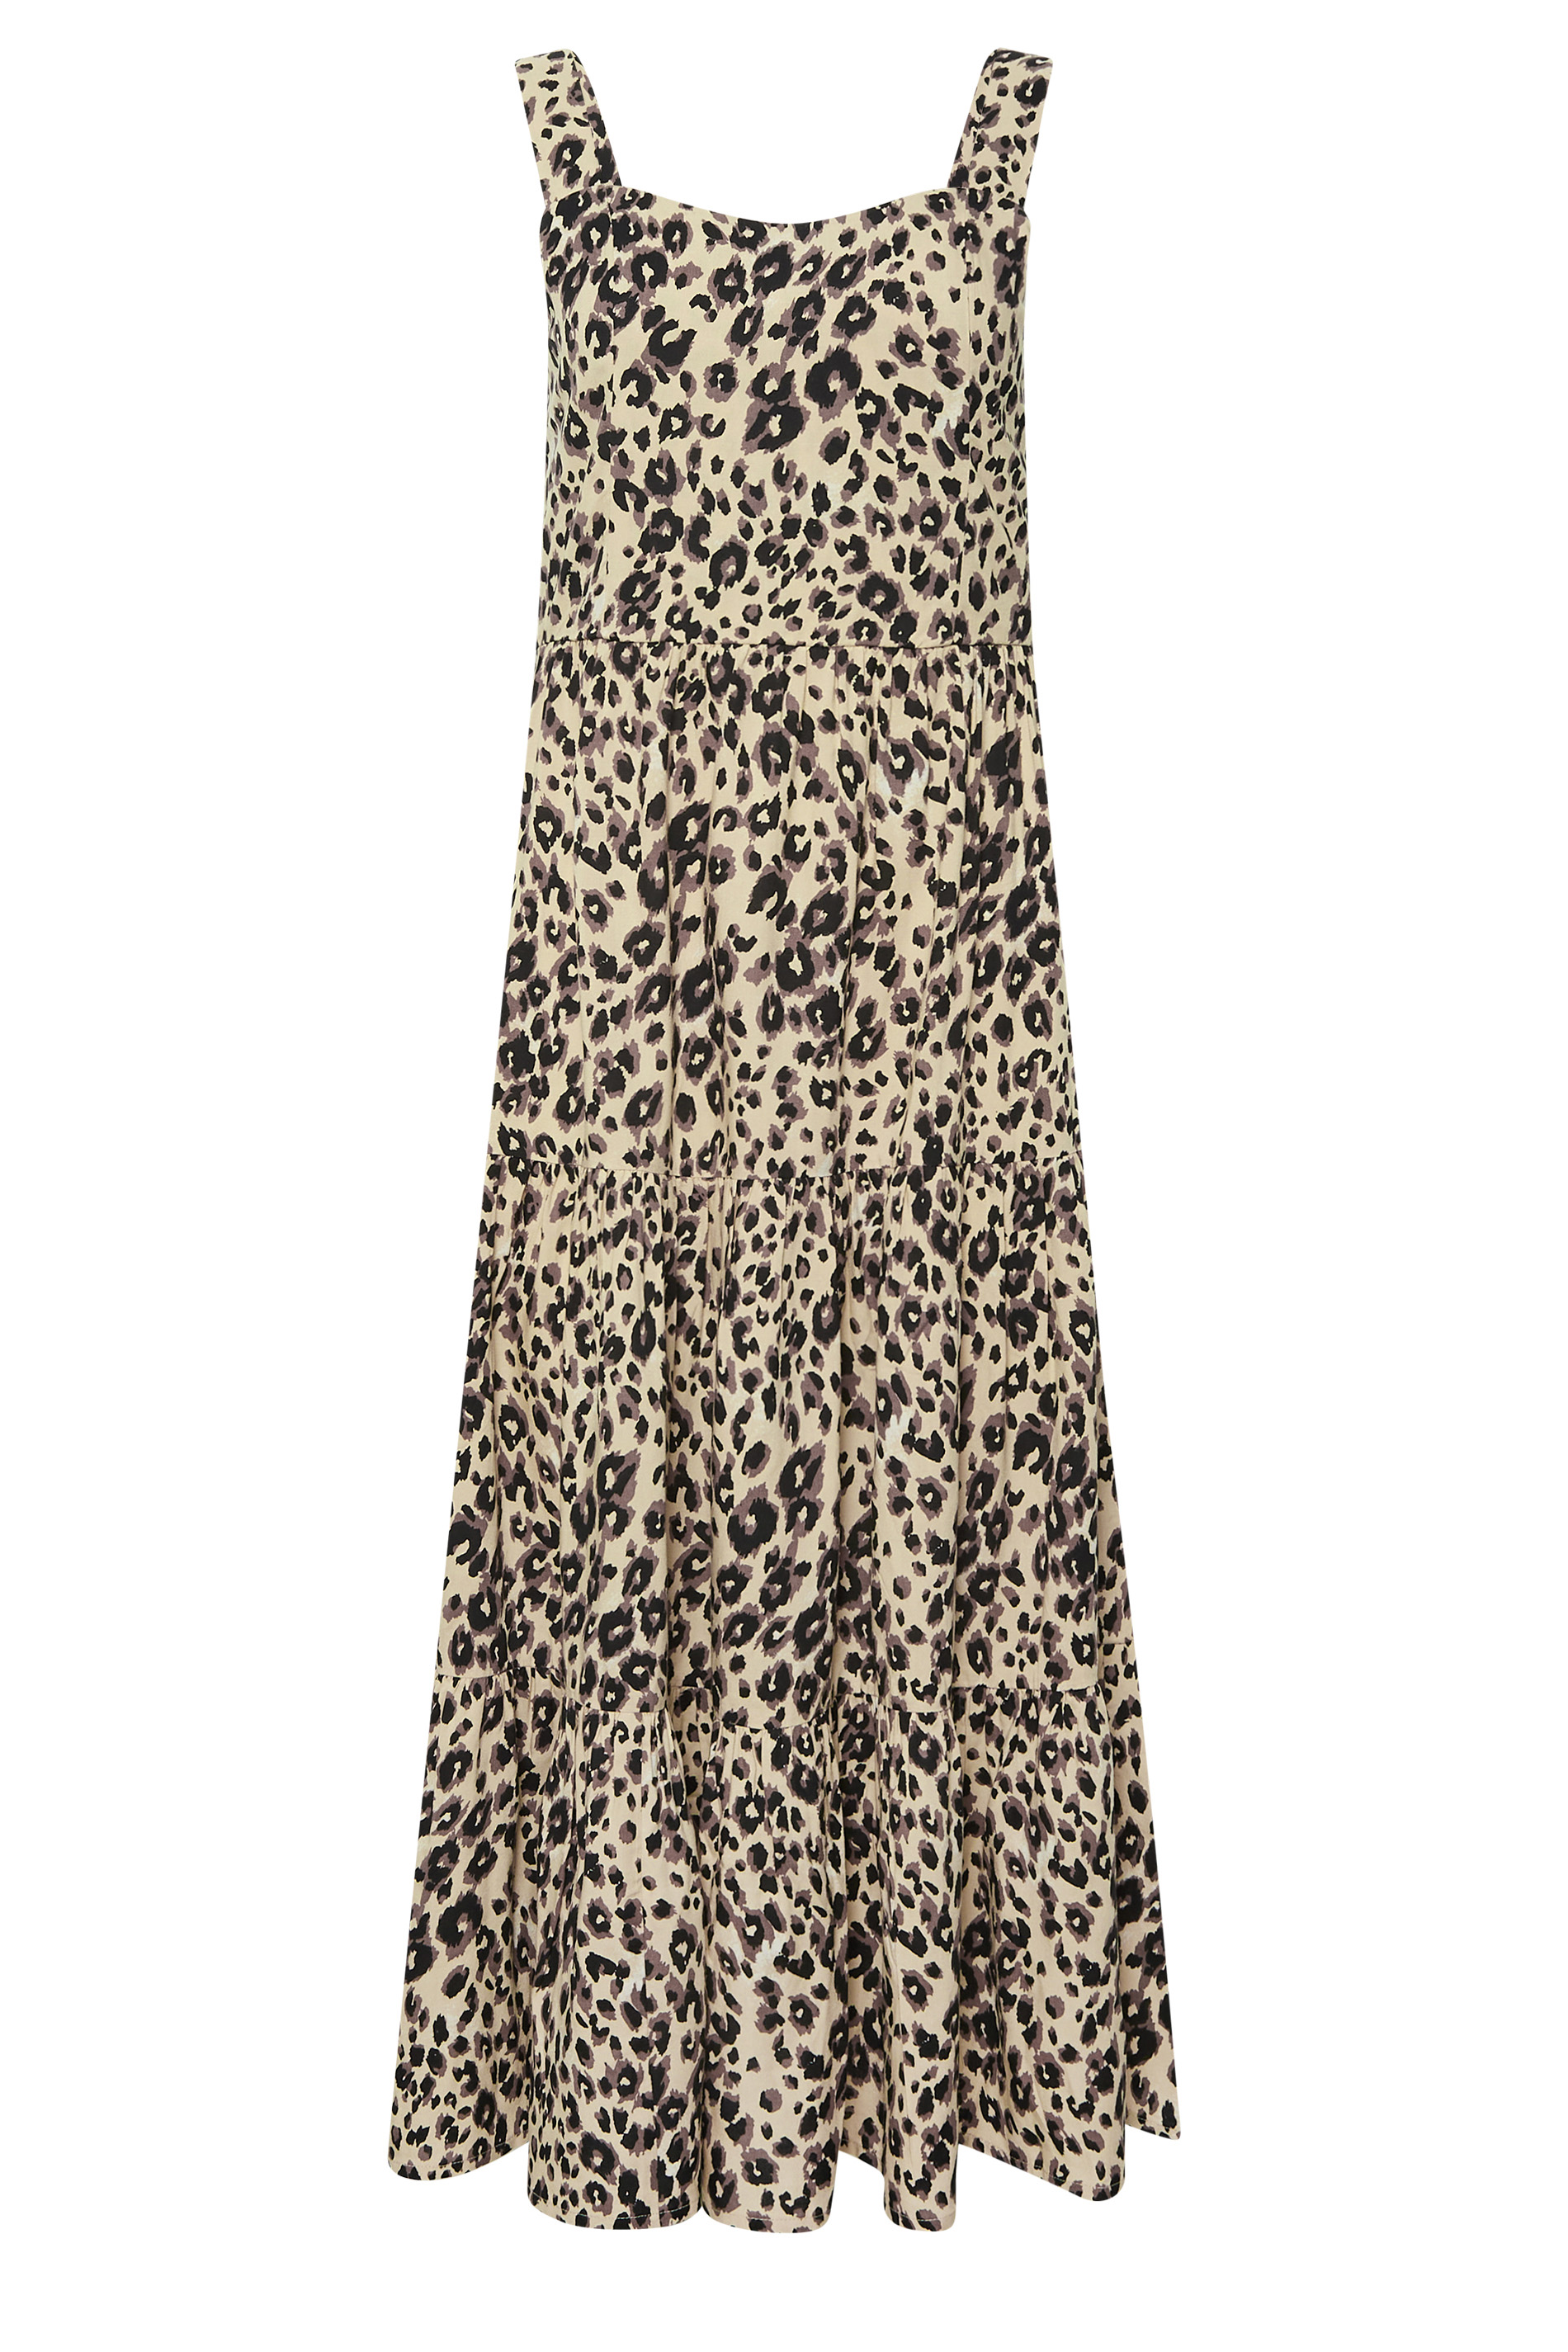 PixieGirl Brown Leopard Print Tiered Midaxi Dress | PixieGirl